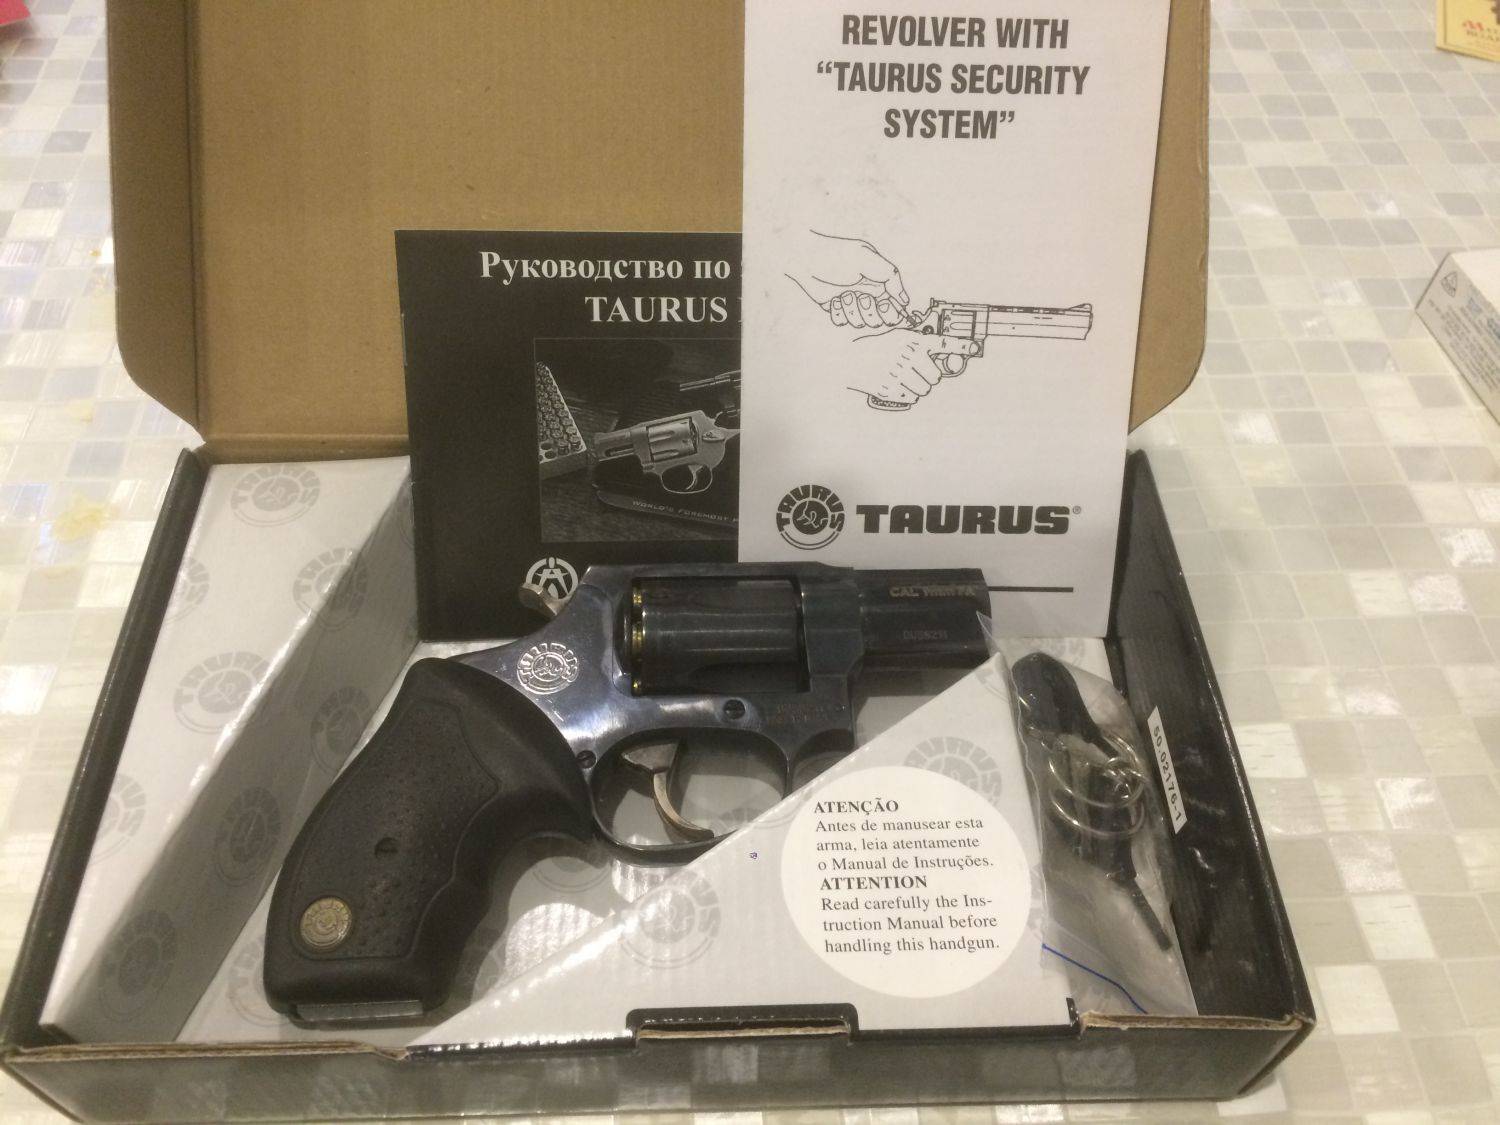 Taurus lom-13 револьвер травматический - отзывы, характеристики, достоинства и недостатки